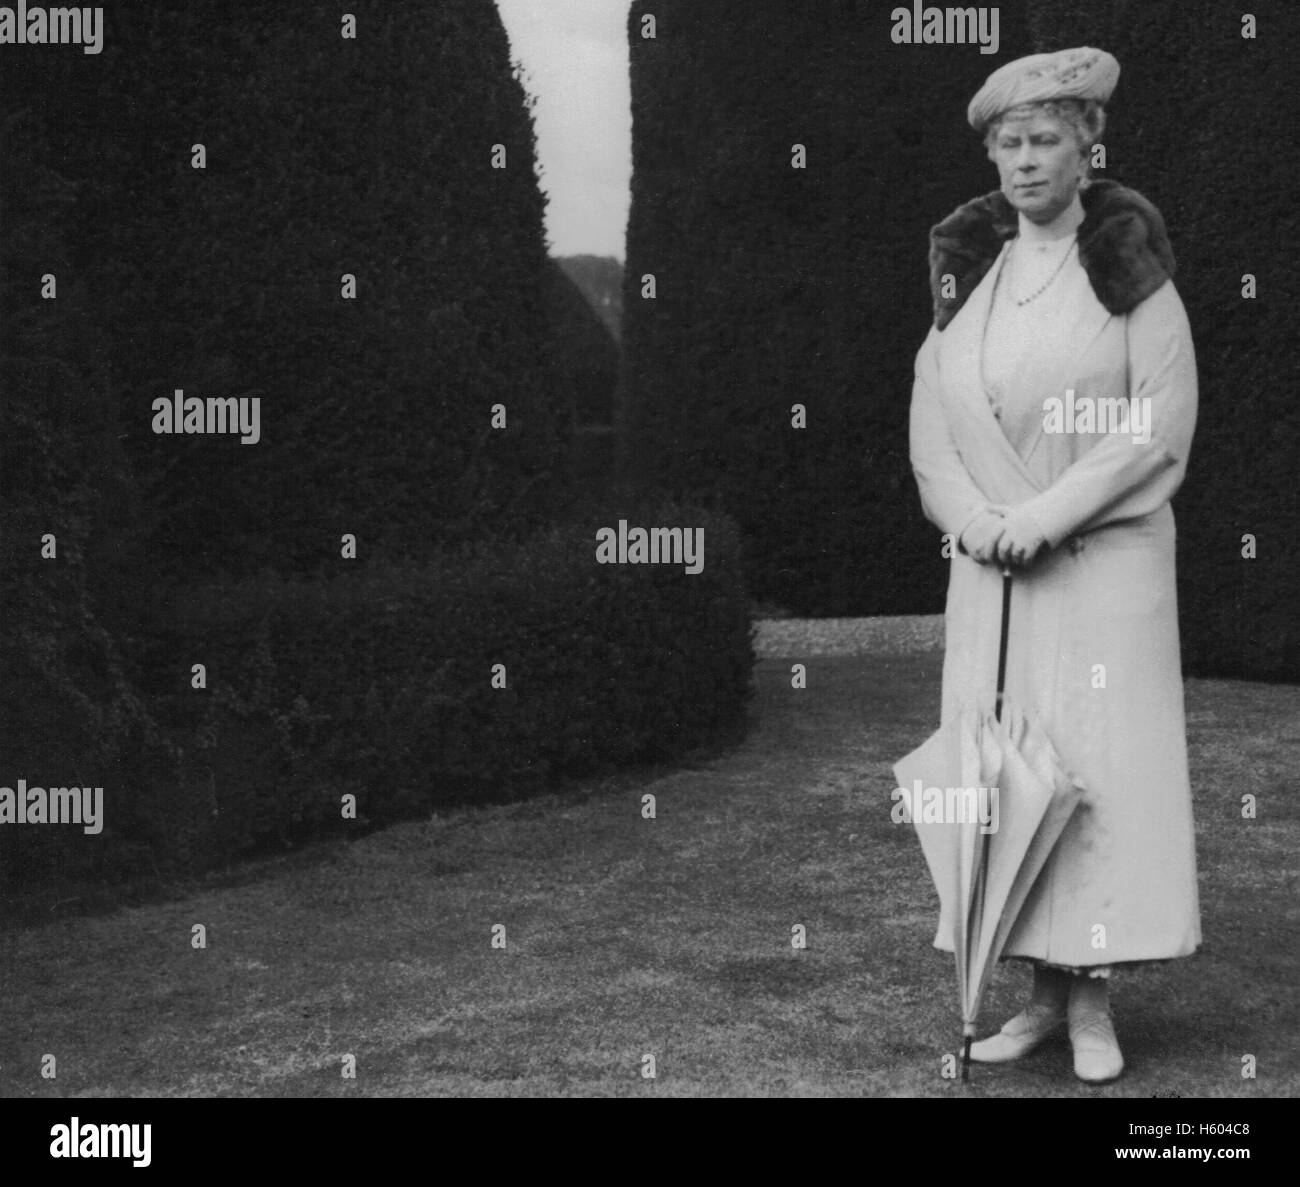 La Principessa Victoria Mary ('May') Teck: nato il 26 maggio, 1867, Kensington Palace di Londra. Sposò George, il Principe di Galles a Londra il 6 luglio 1893. Ella divenne la principessa di Galles il 9 novembre 1901, allora la regina del Regno Unito e i domini britannici e Empress of India quando suo marito, salì al trono come re Giorgio V il 6 maggio, 1910. Mary morì il 24 marzo 1953, all'età 85, appena dieci settimane prima di suo nipote, Elisabetta sua incoronazione. Foto circa 1932 Foto Stock